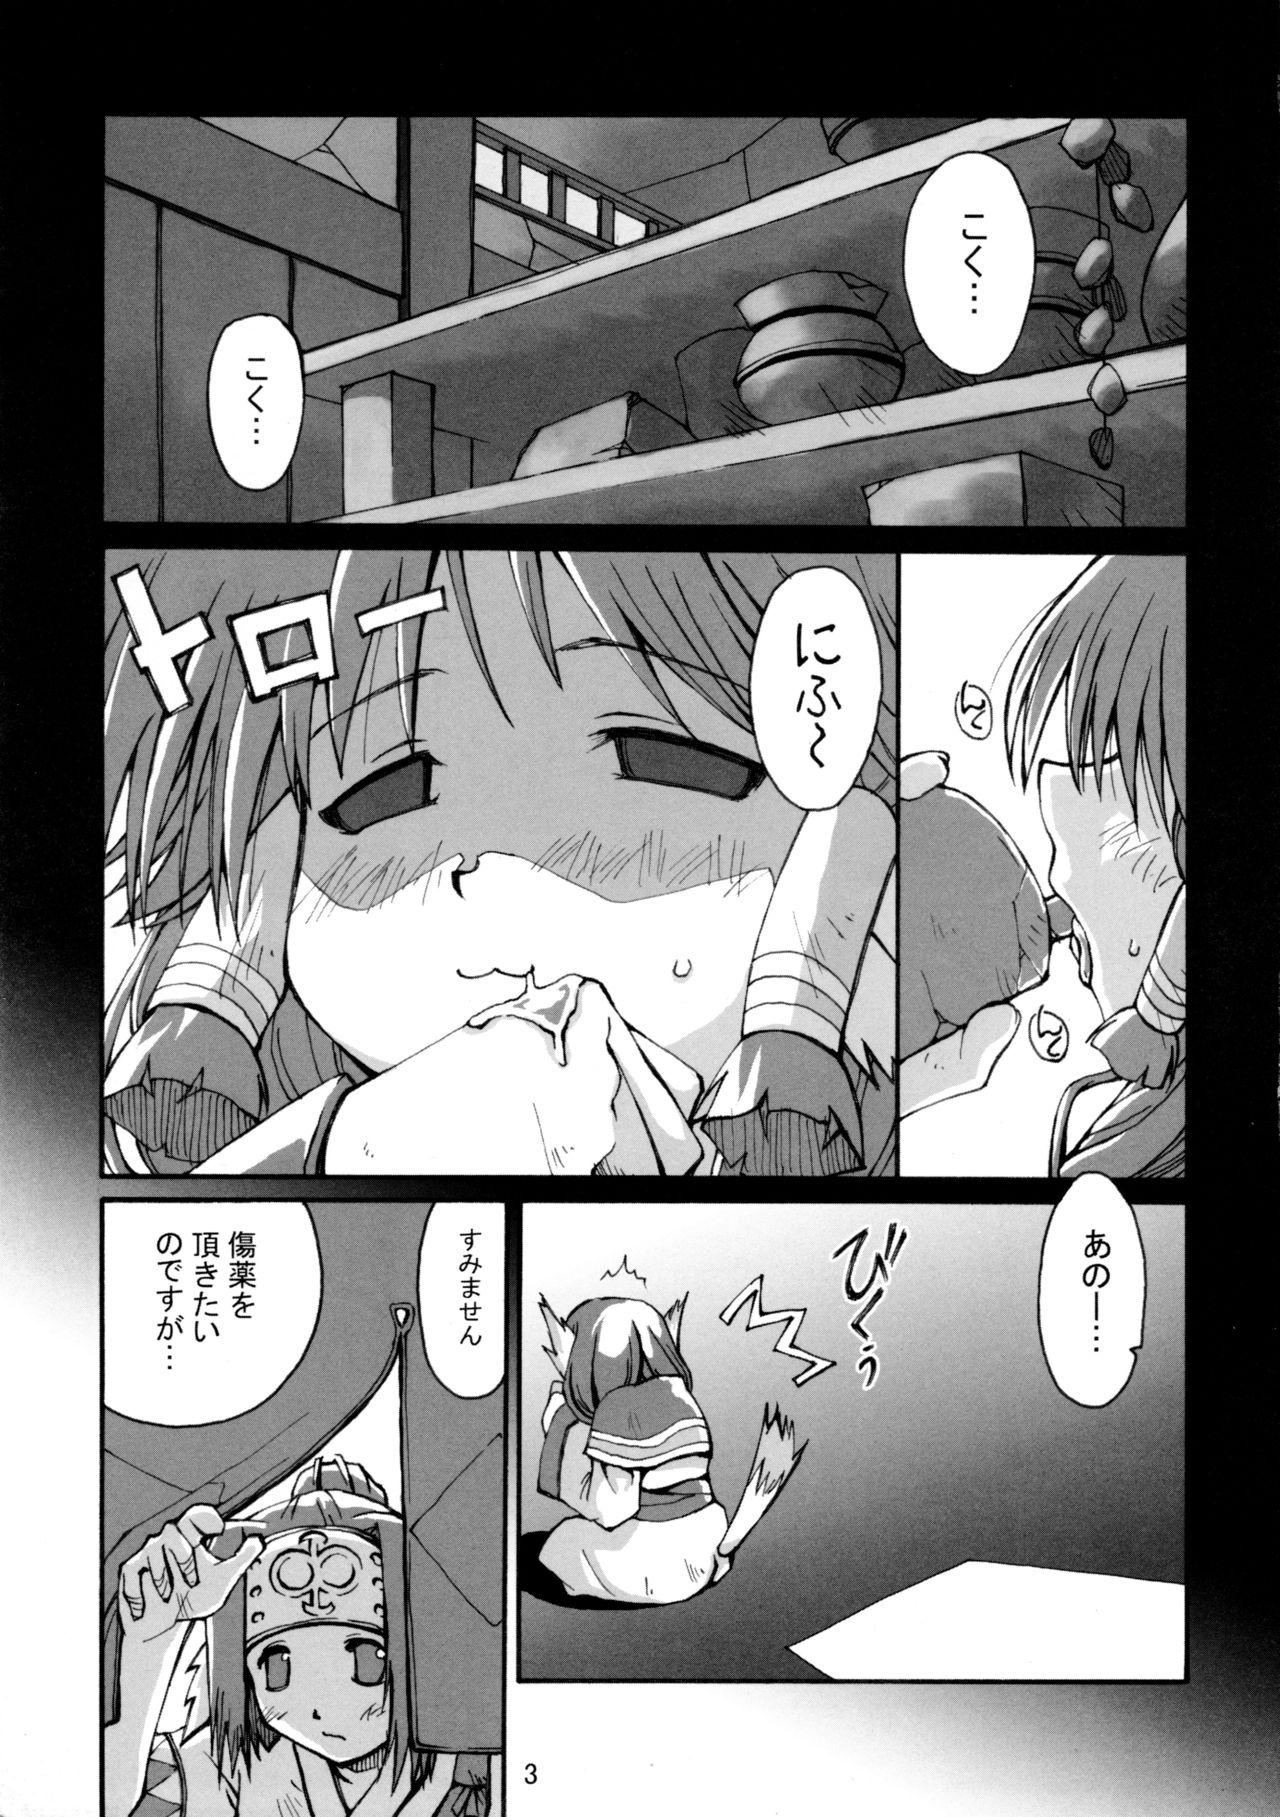 Orgasm Hachimitsu - Utawarerumono Blows - Page 5